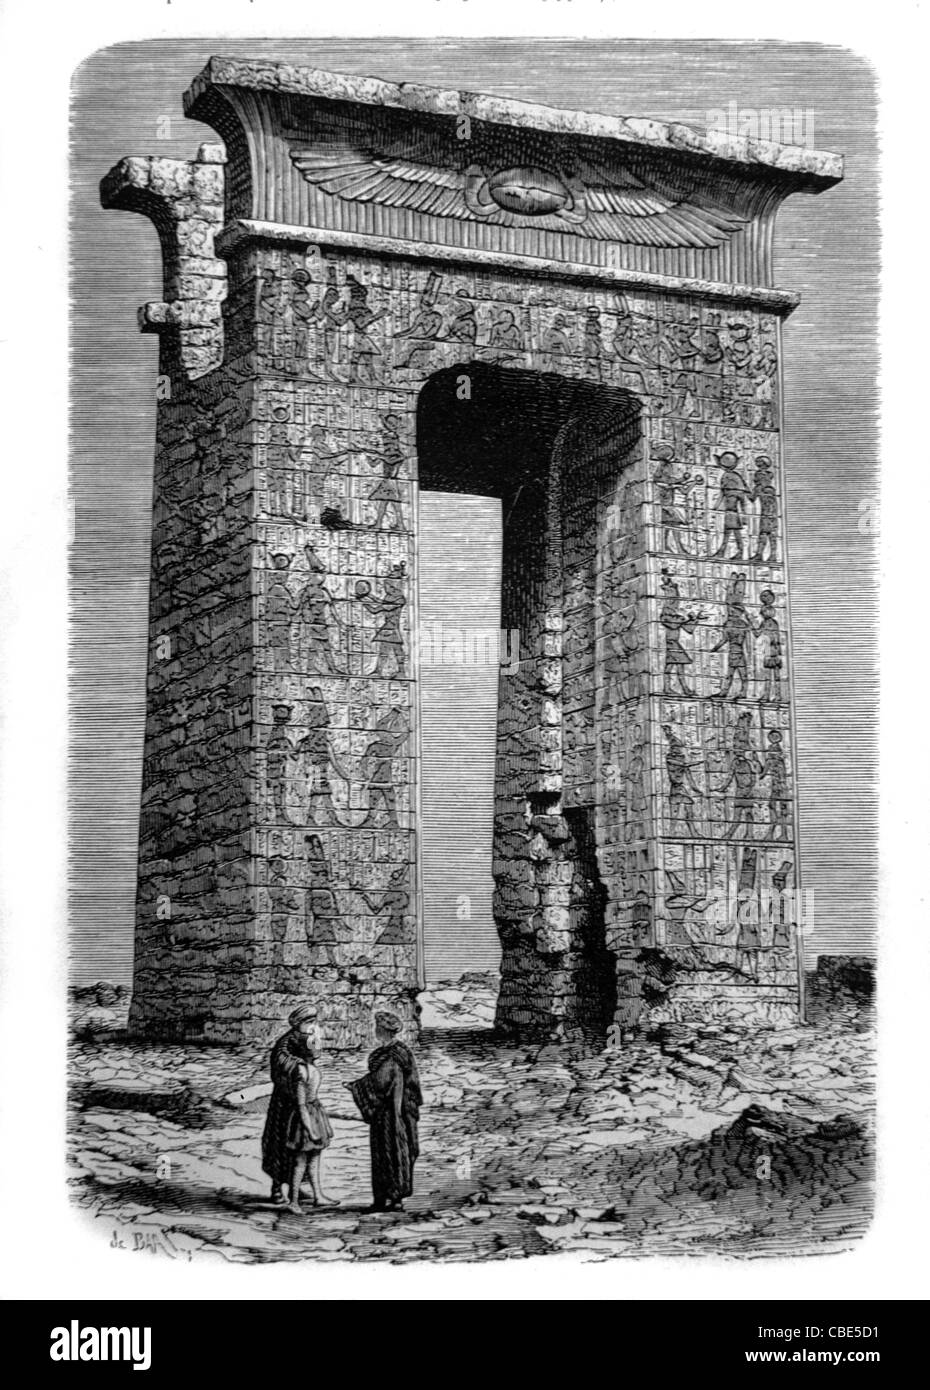 Tempio di Karnak, Egitto. c19 incisione o illustrazione d'epoca Foto Stock